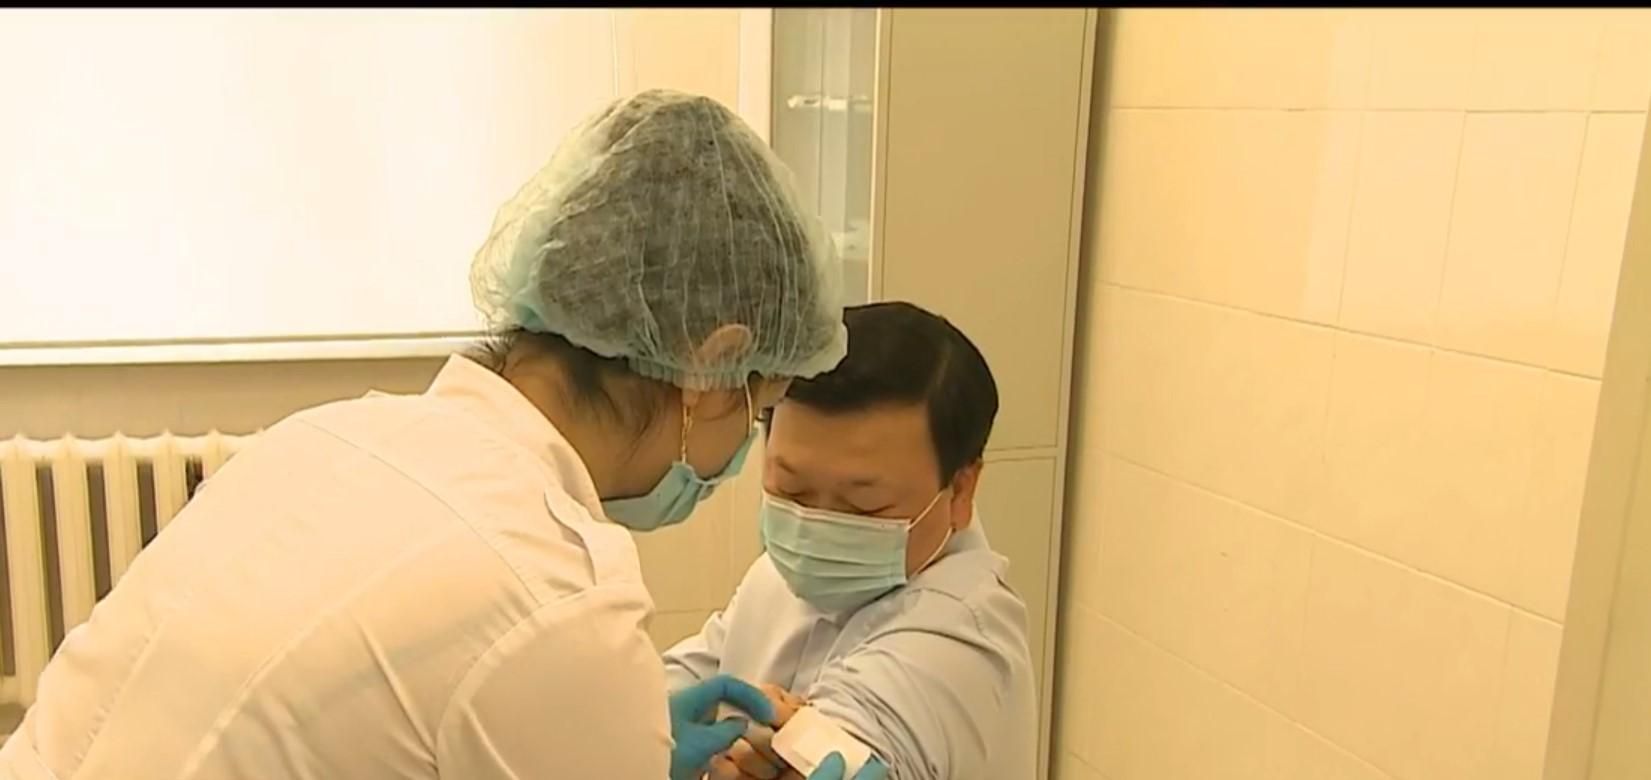 Казахстан начал использовать собственную COVID-вакцину: ее вкололи министру